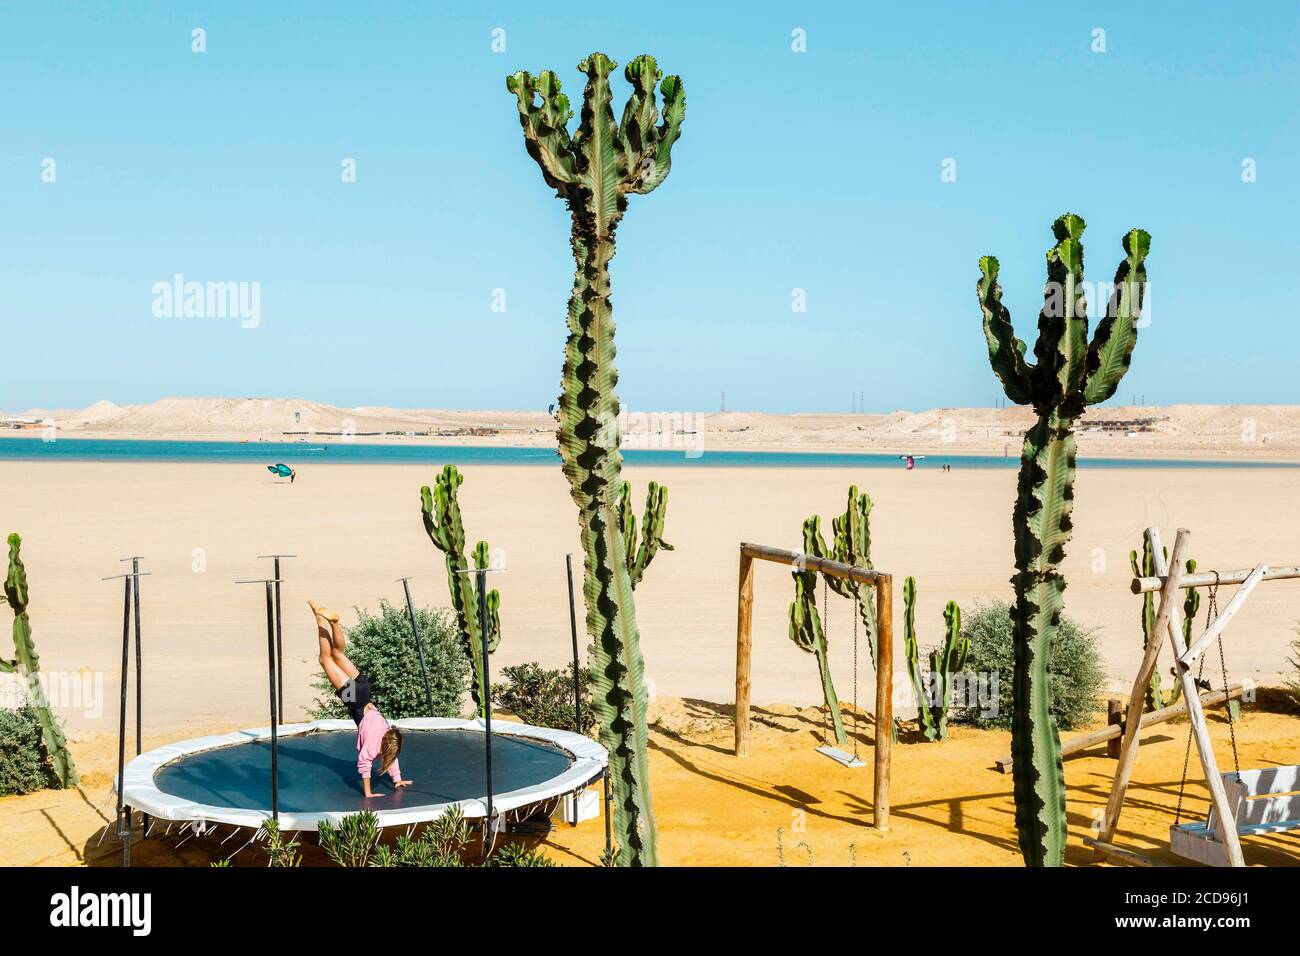 Marocco, Oued Ed-Dahab, Dakhla, Ocean Vagabond Resort, niña jugando en un trampolín junto al mar en un clima tropical y desértico Foto de stock